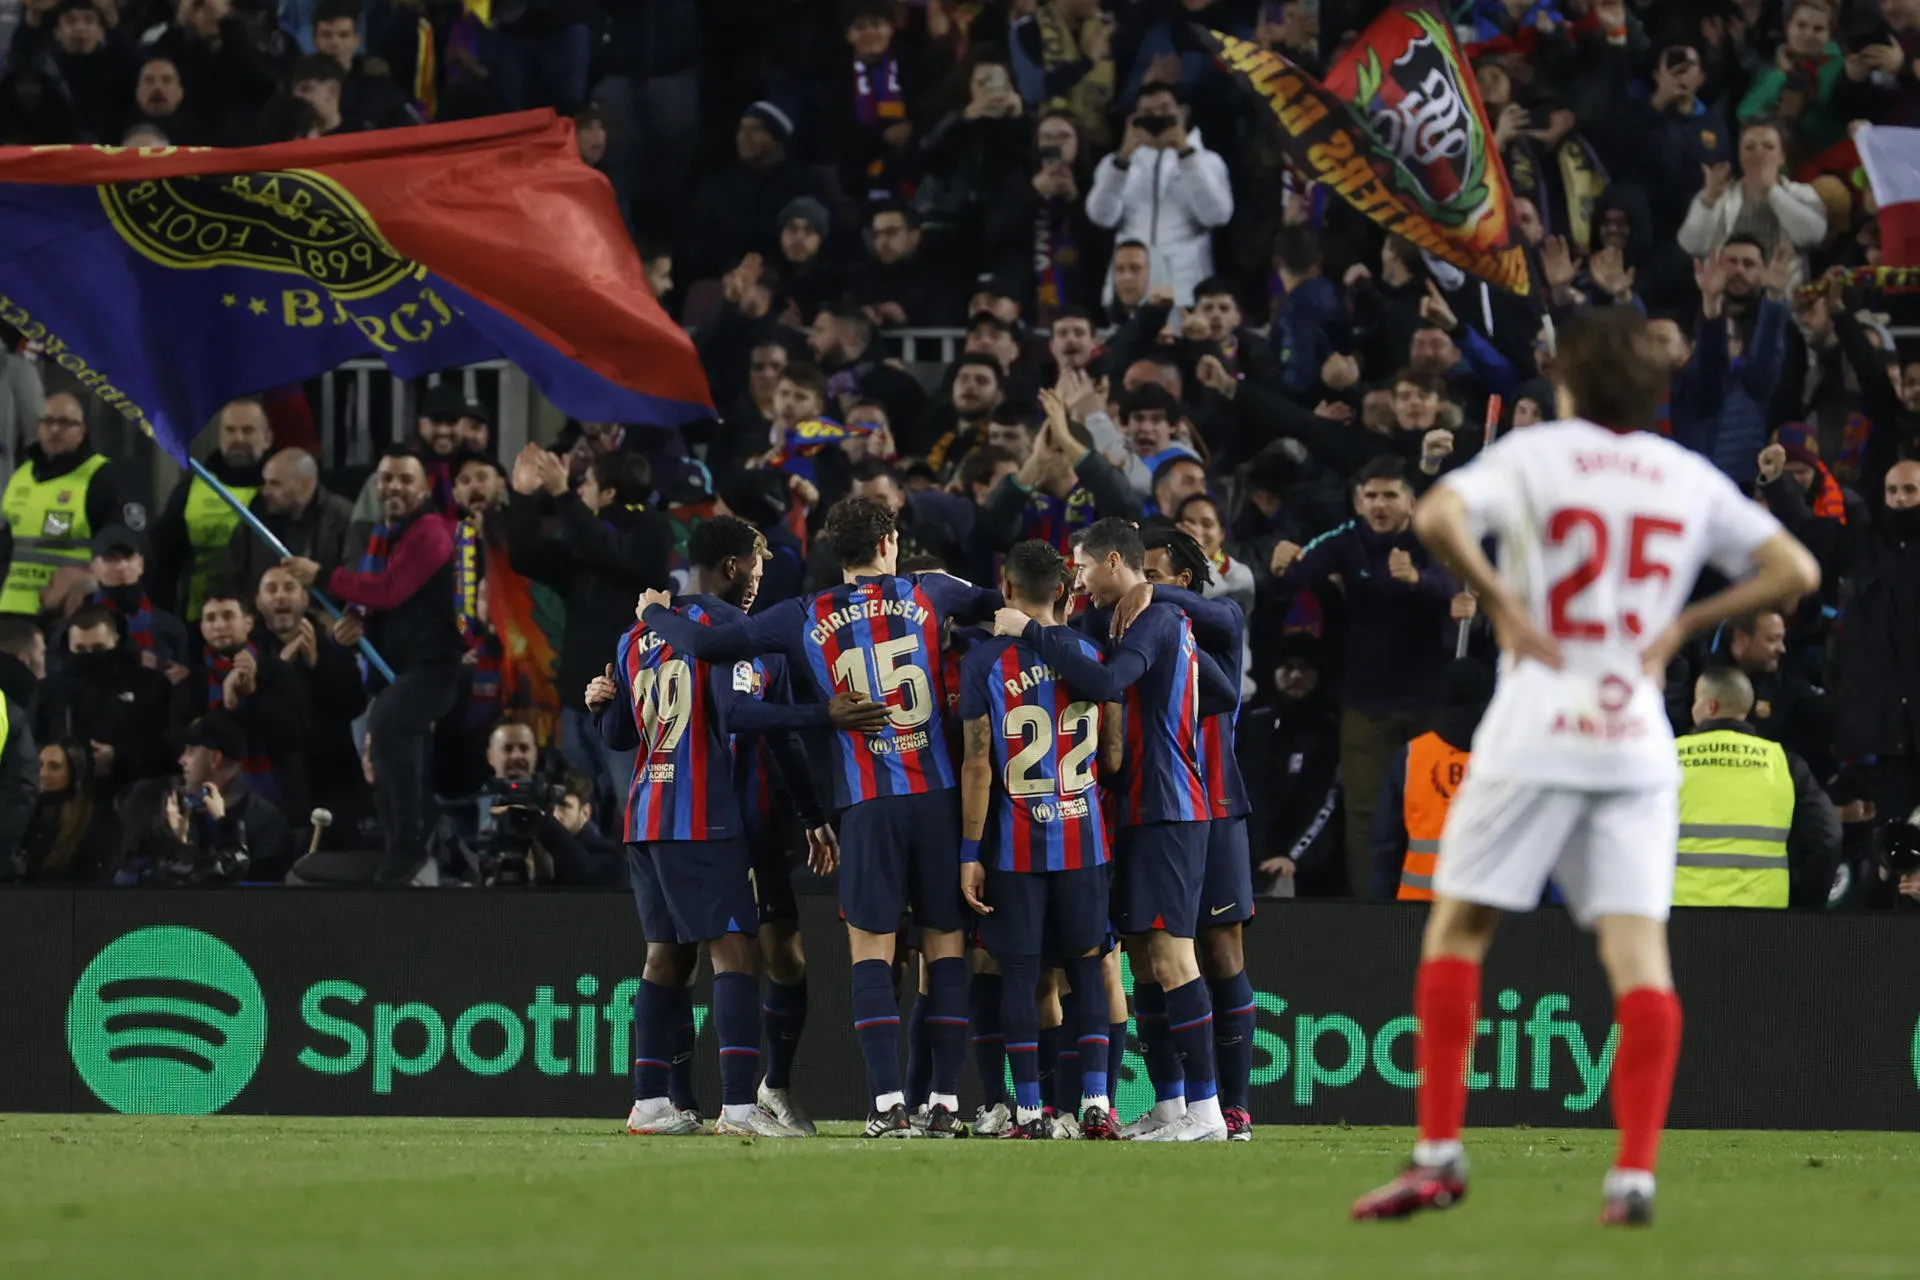 El Barcelona golea al Sevilla y abre hueco en LaLiga. El Madrid pierde